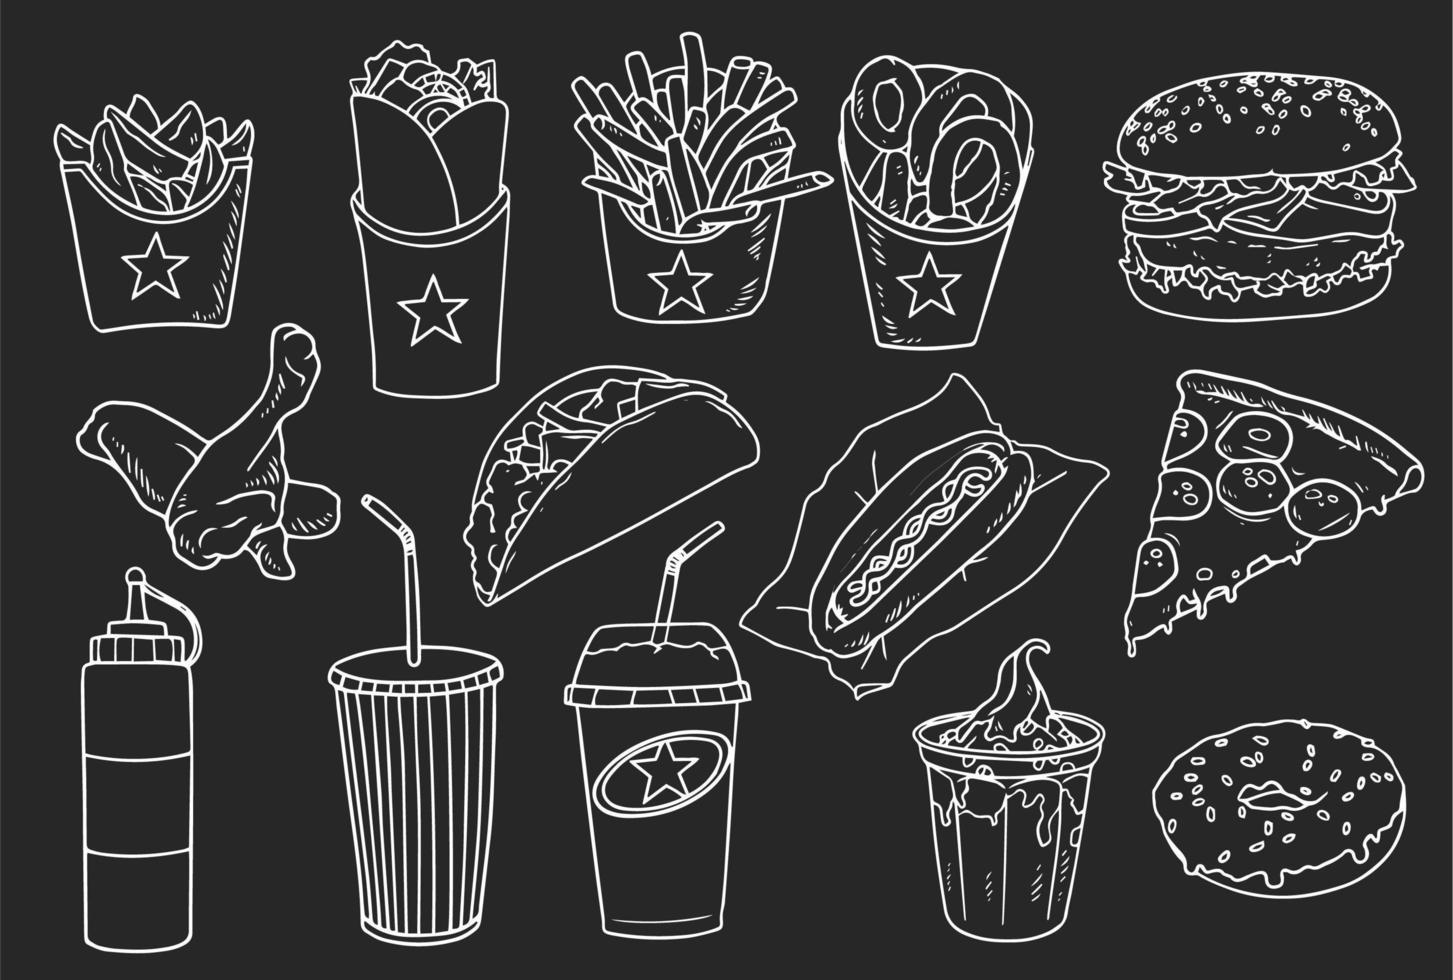 Sammlung von handgezeichneten Fast-Food-Elementen vektor